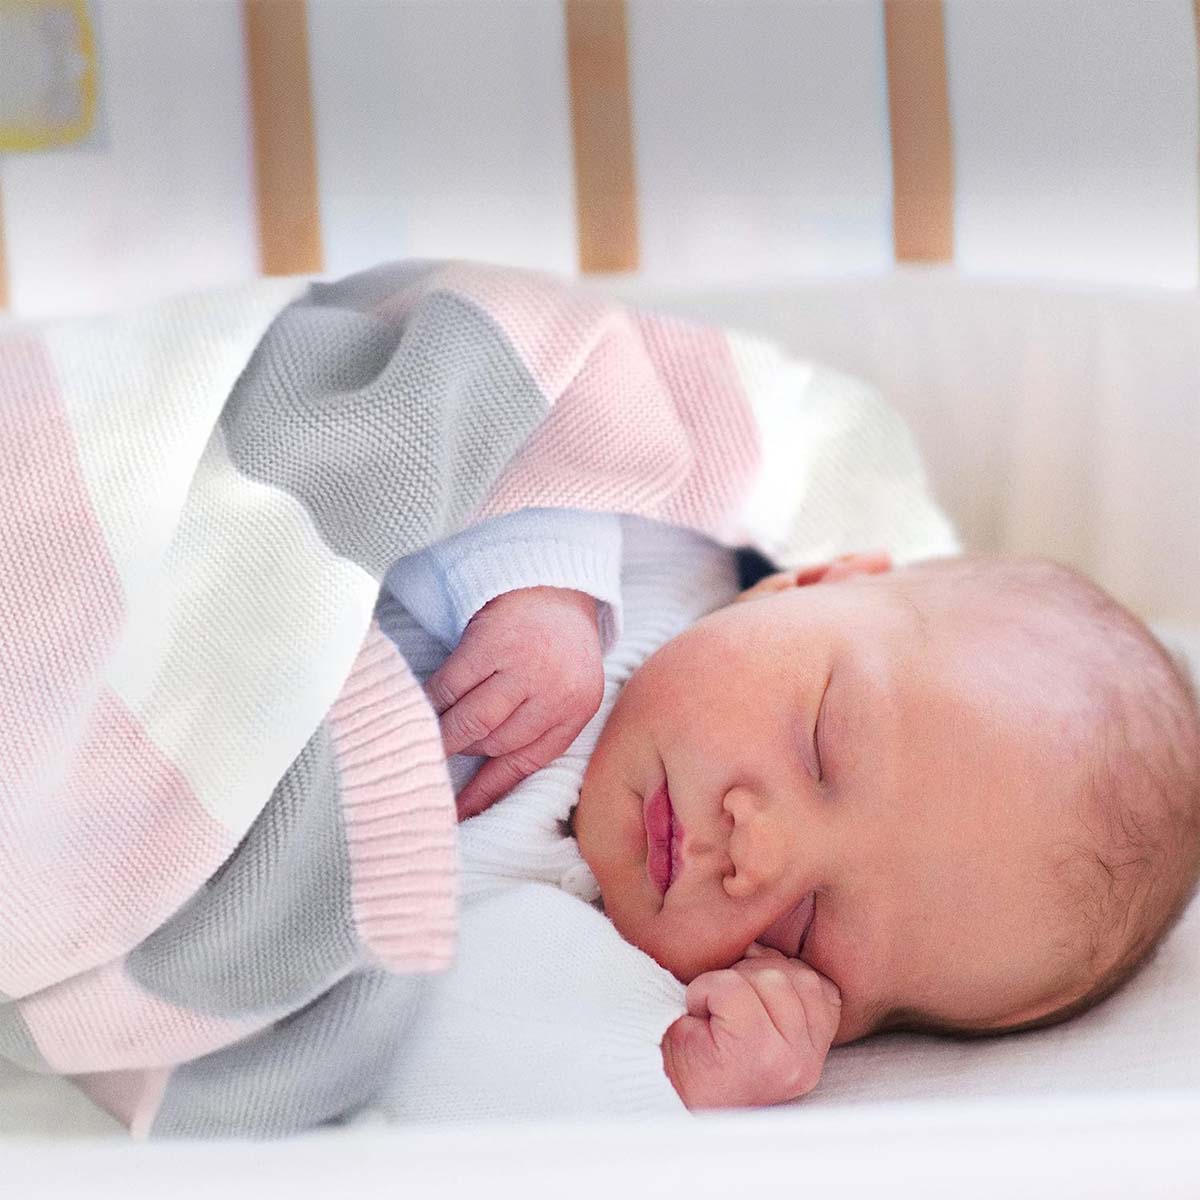 Neugeborenes schläft friedlich eingehüllt in eine rosa-weiß-graue gestreifte Bio-Baumwolldecke.